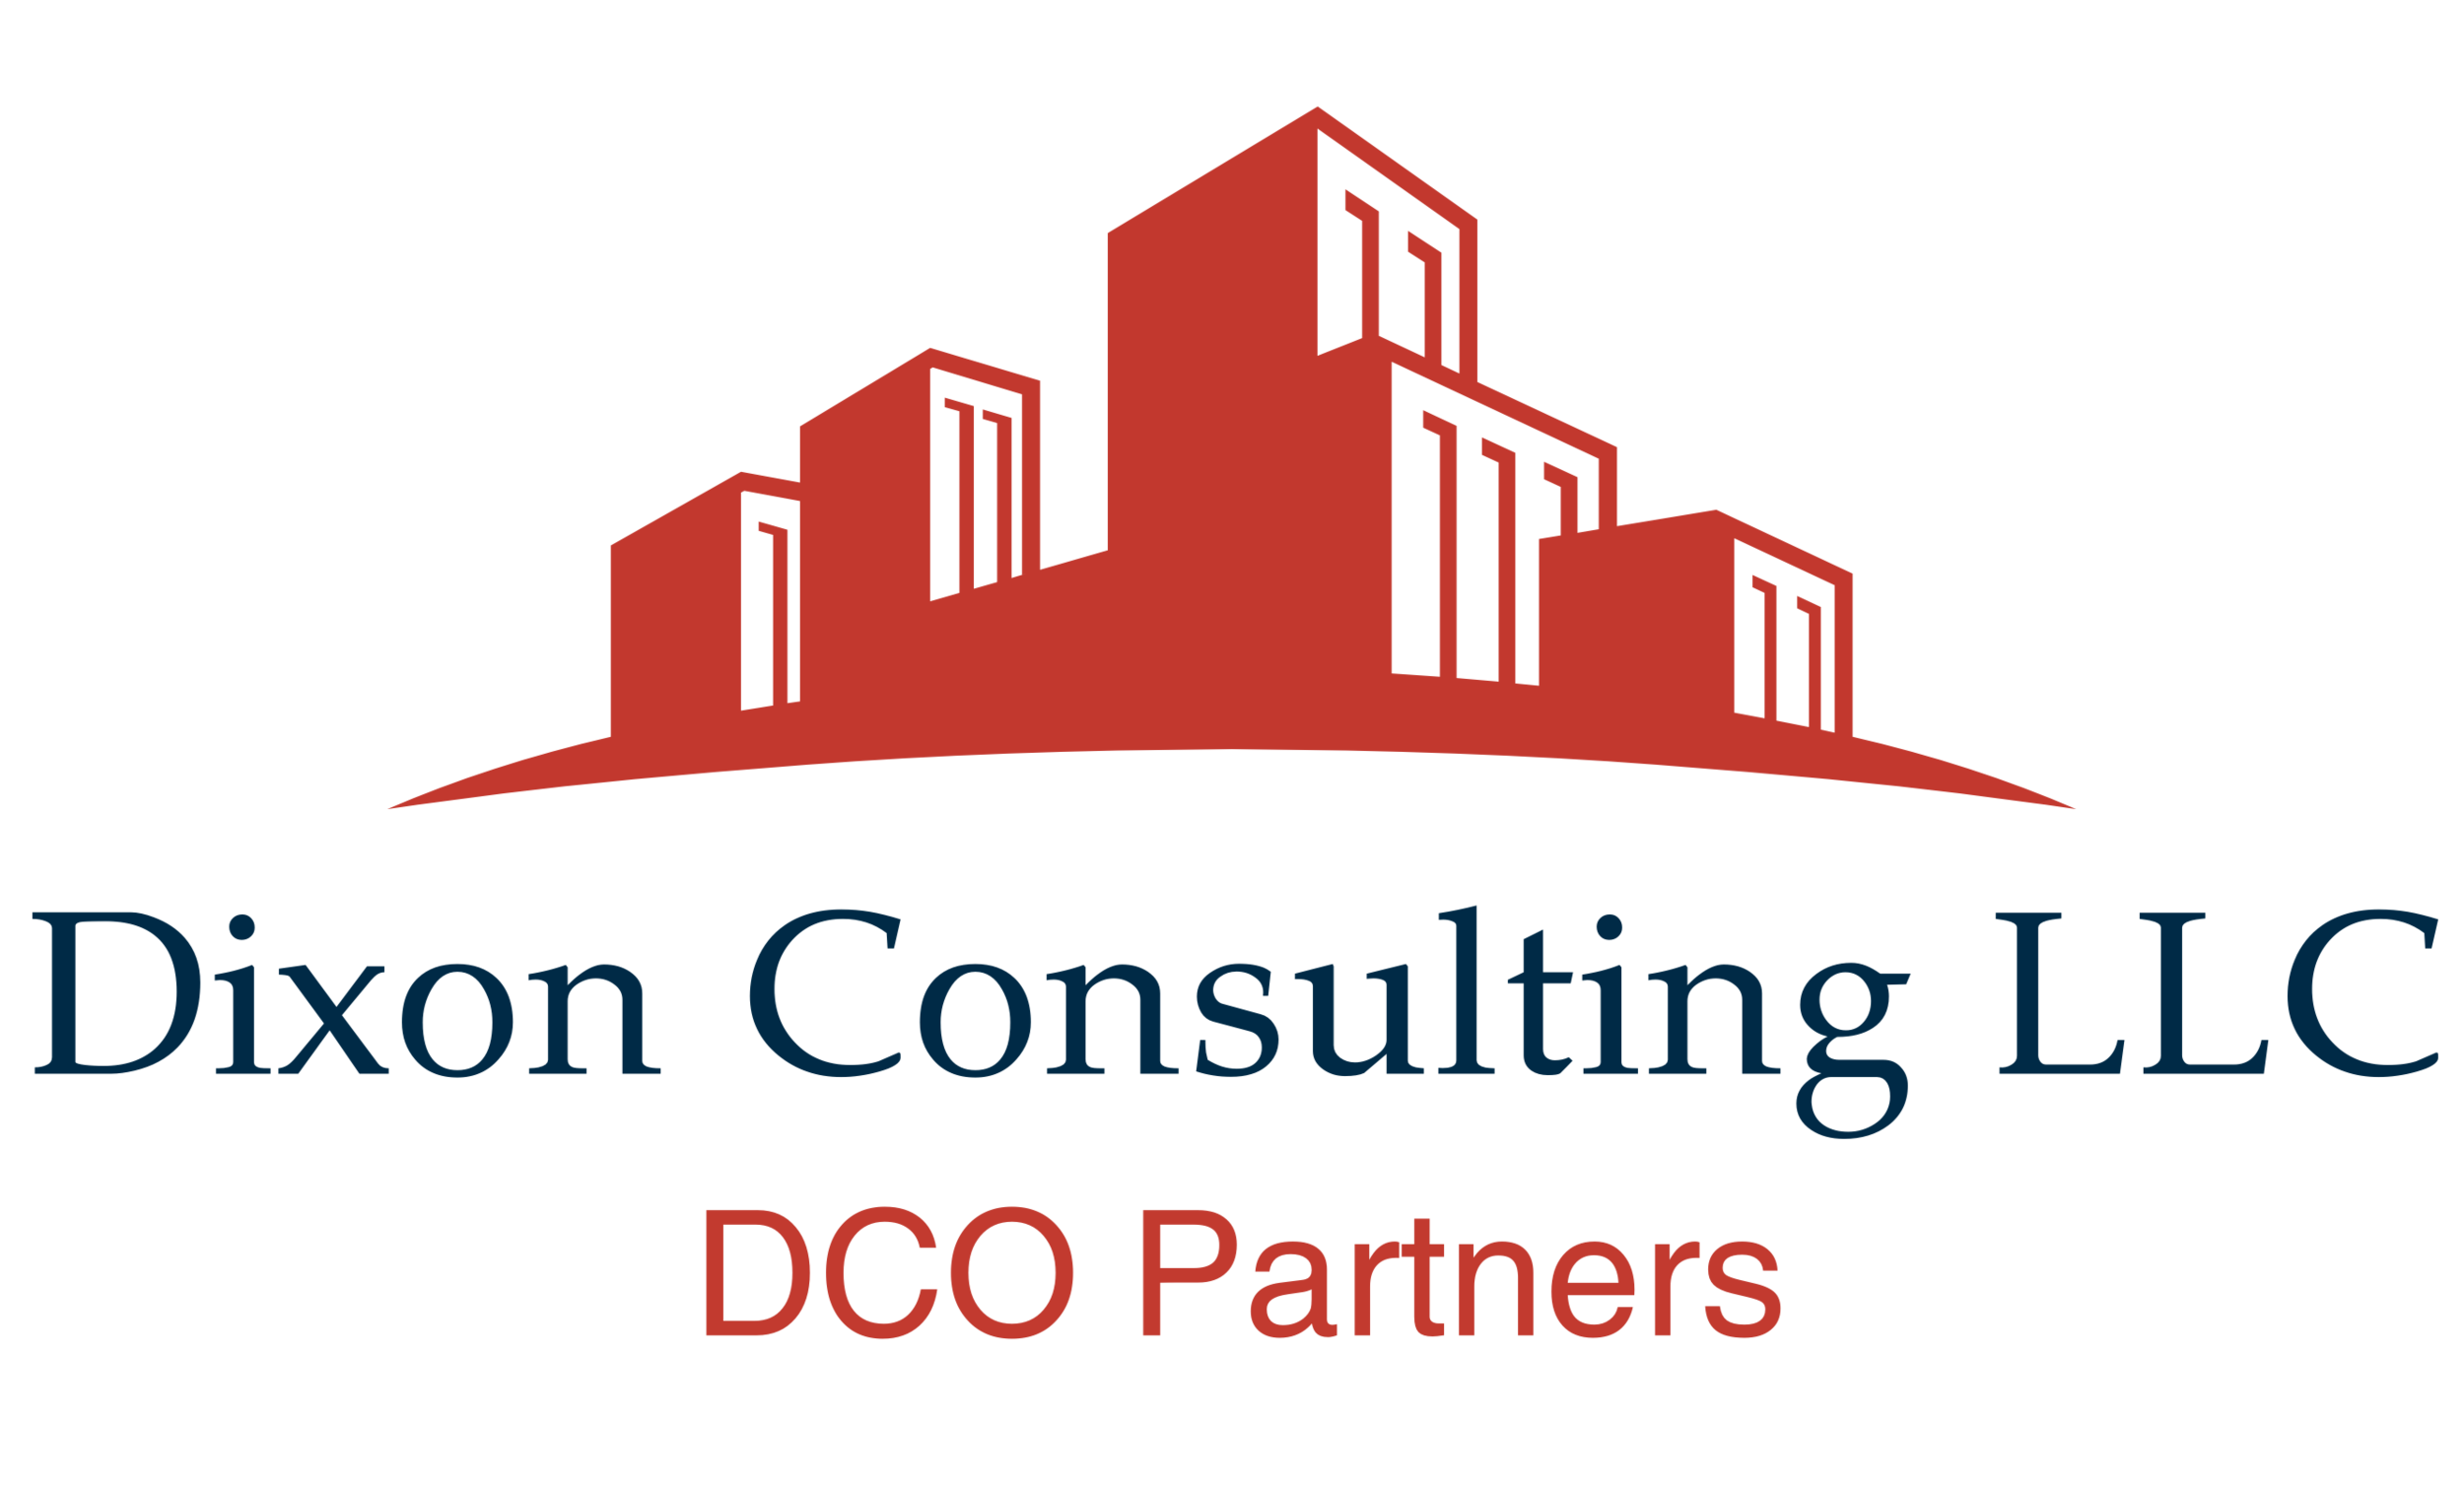 Dixon Consulting LLC